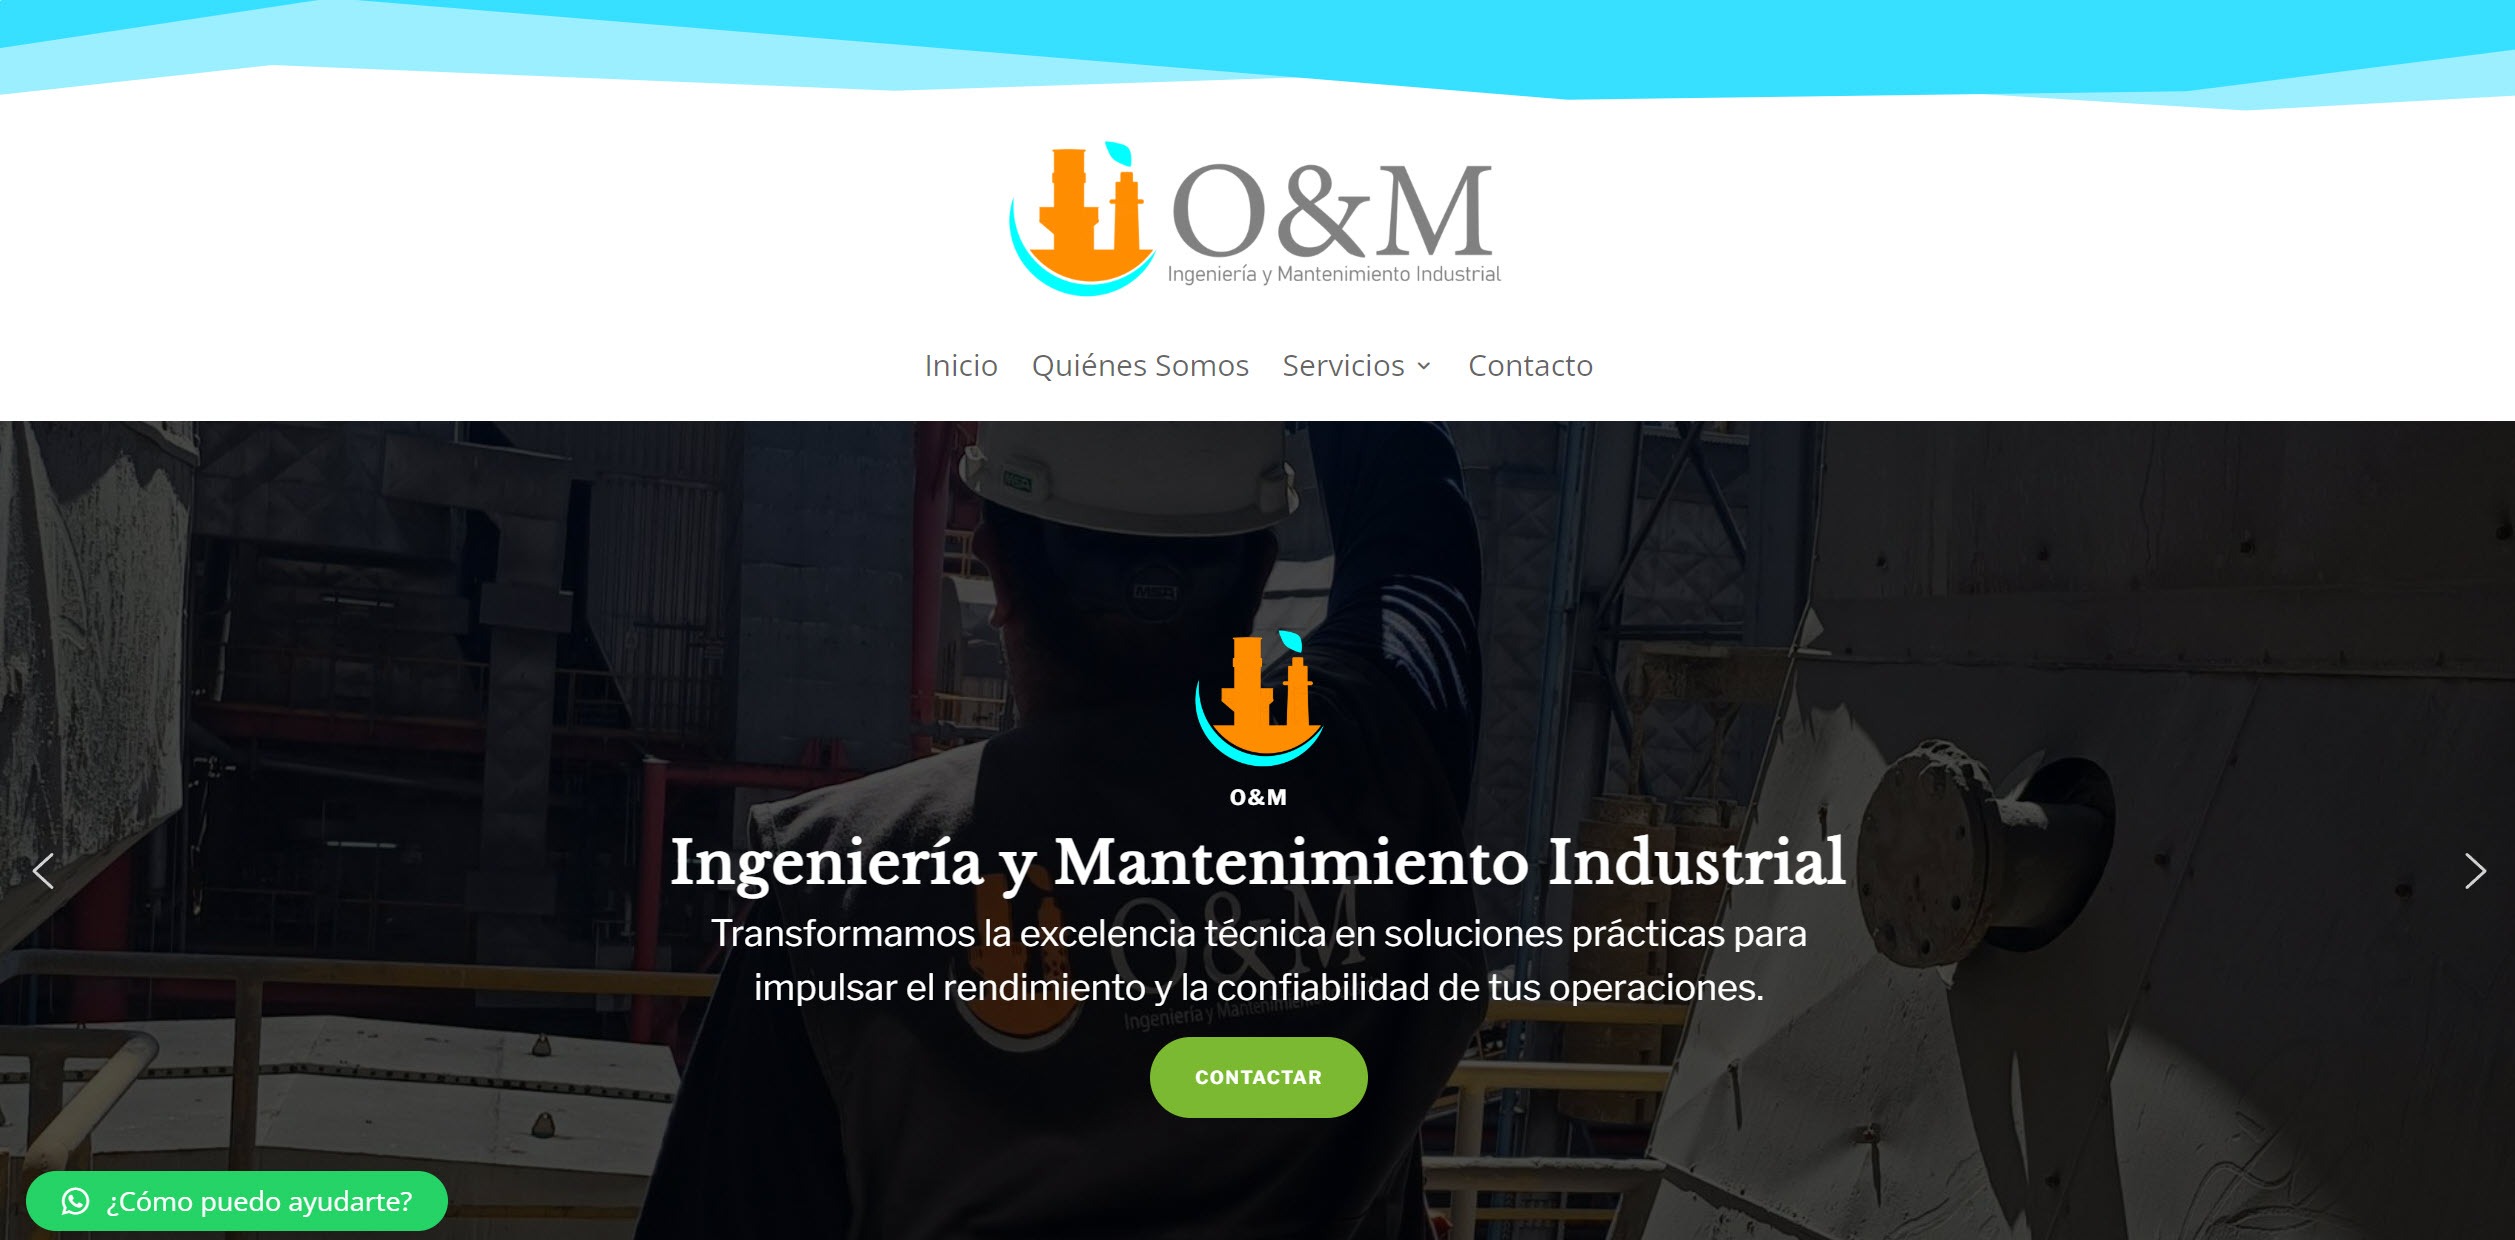 Proyecto O&M Ingeniería: Transformación Integral Online y Corporativa